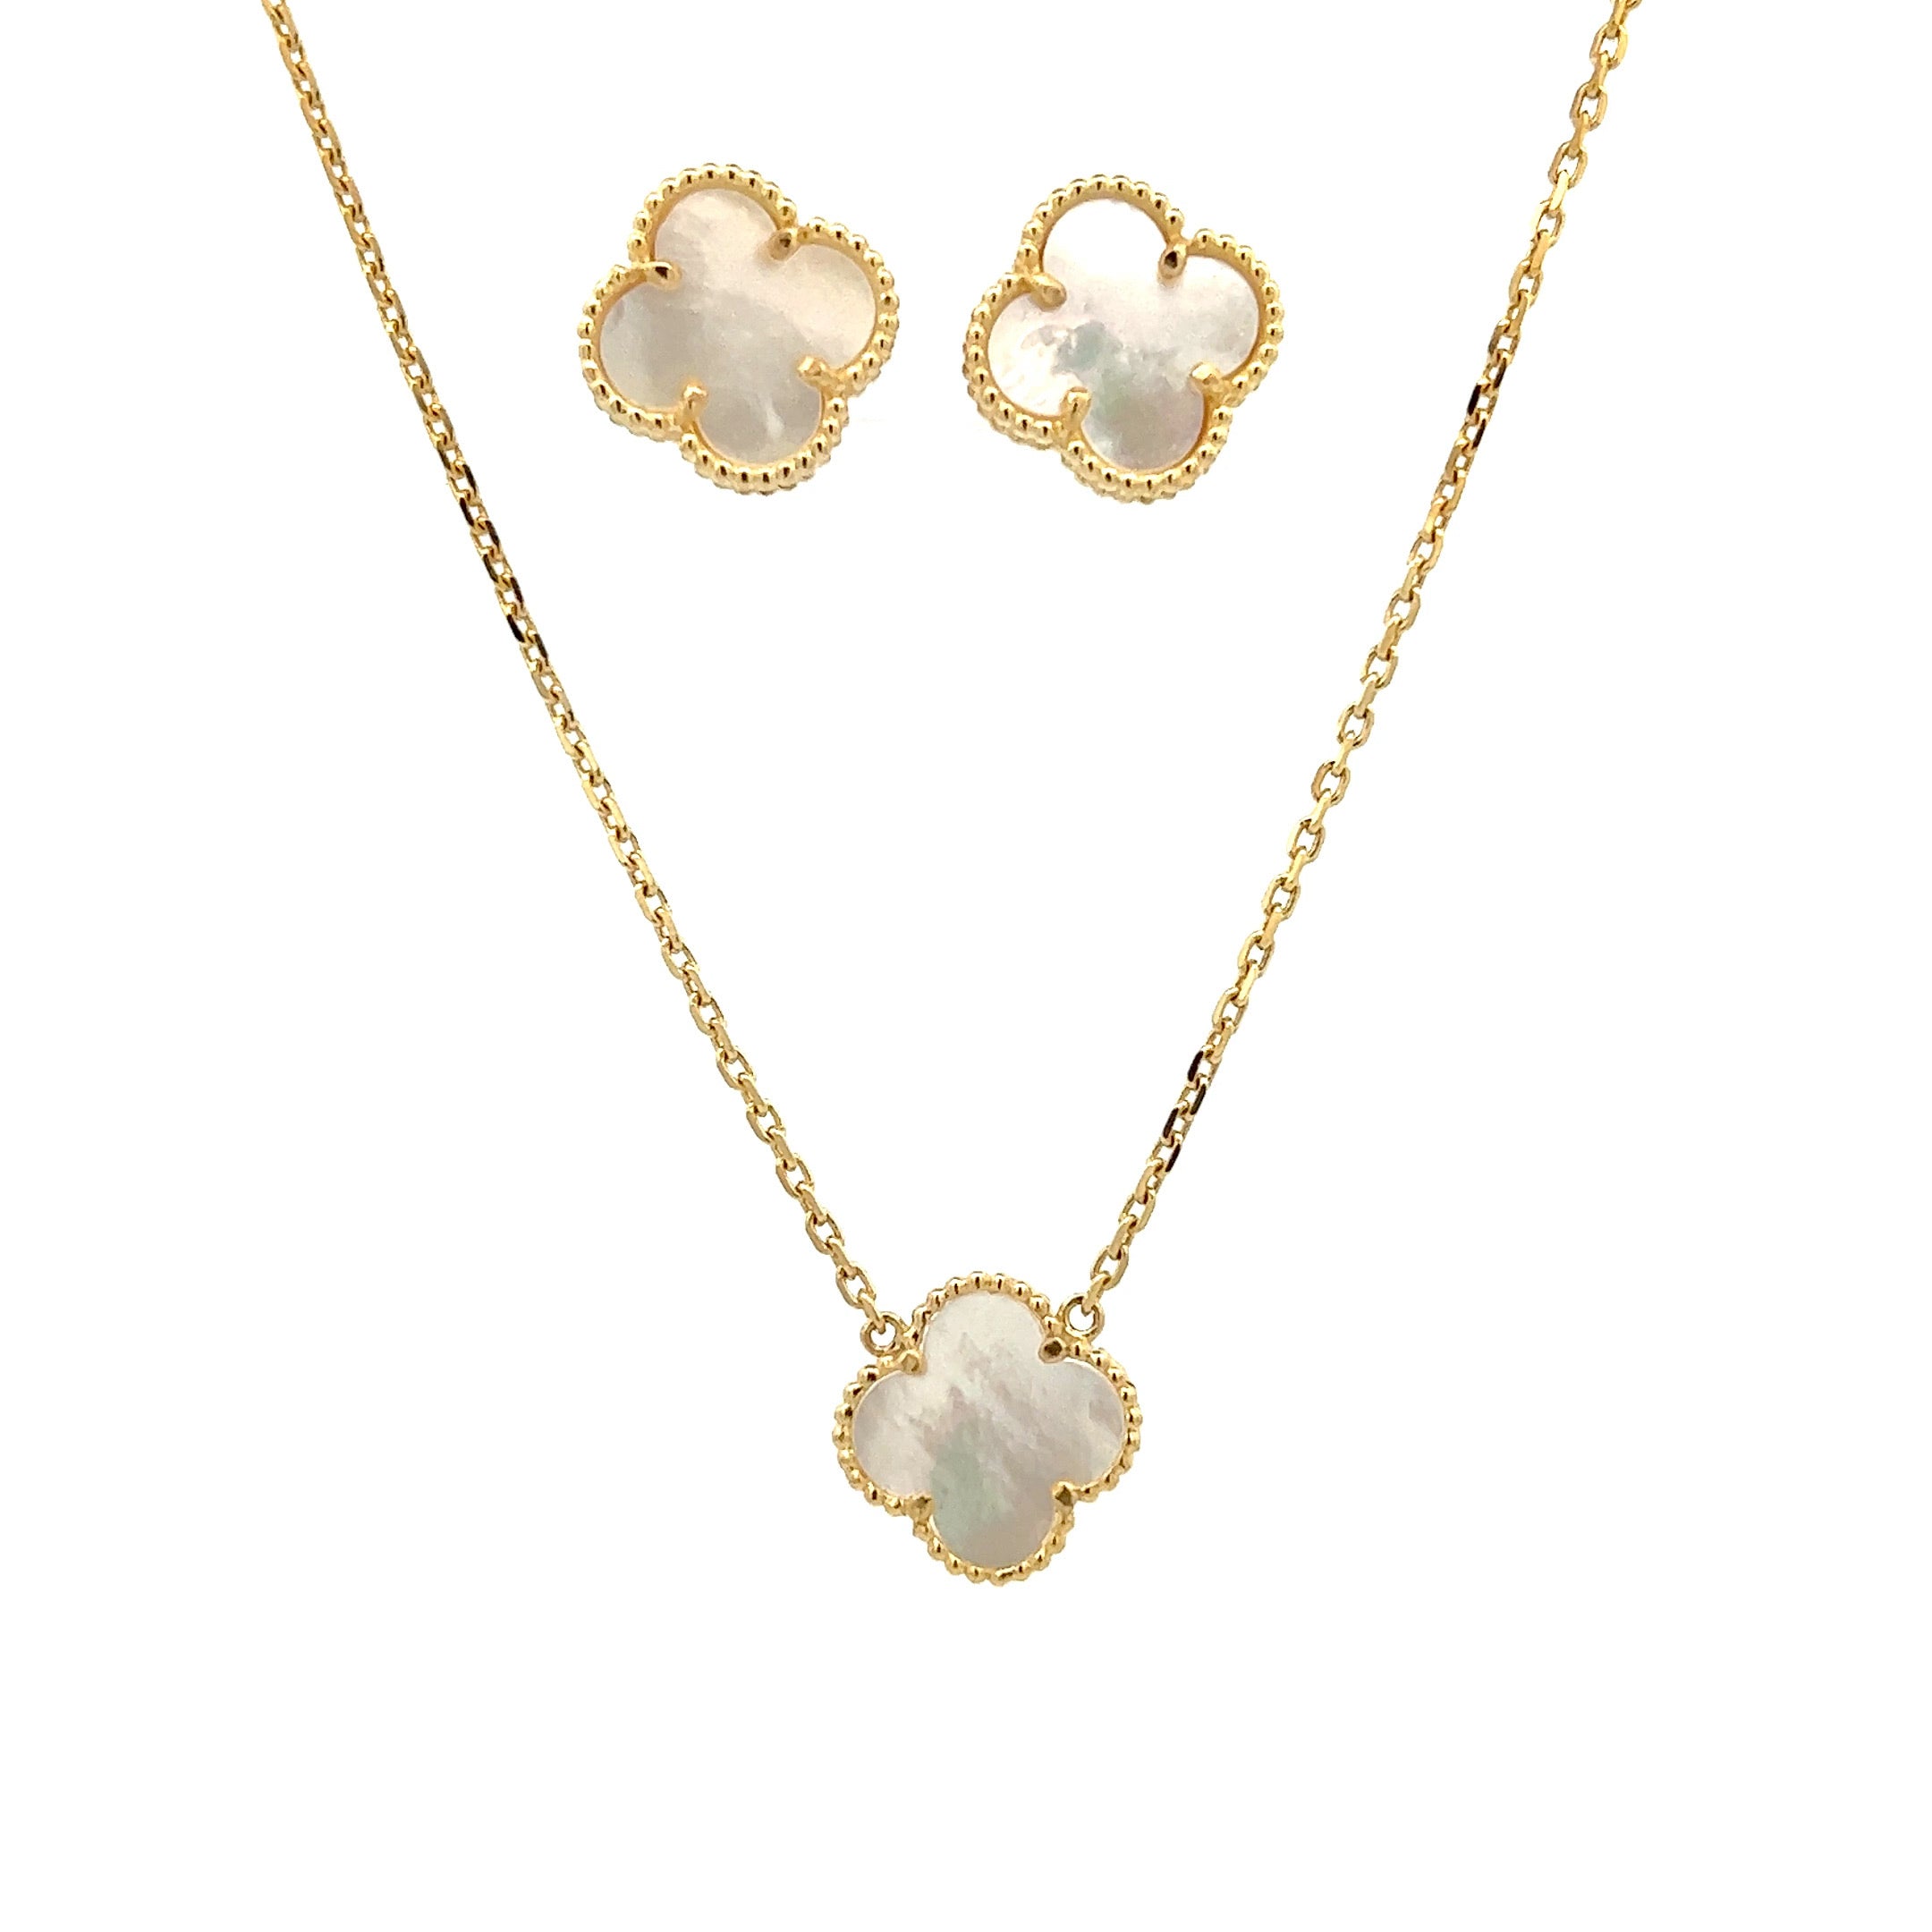 Buy/Send Sensational Mother of Pearl Necklace Set Online- FNP